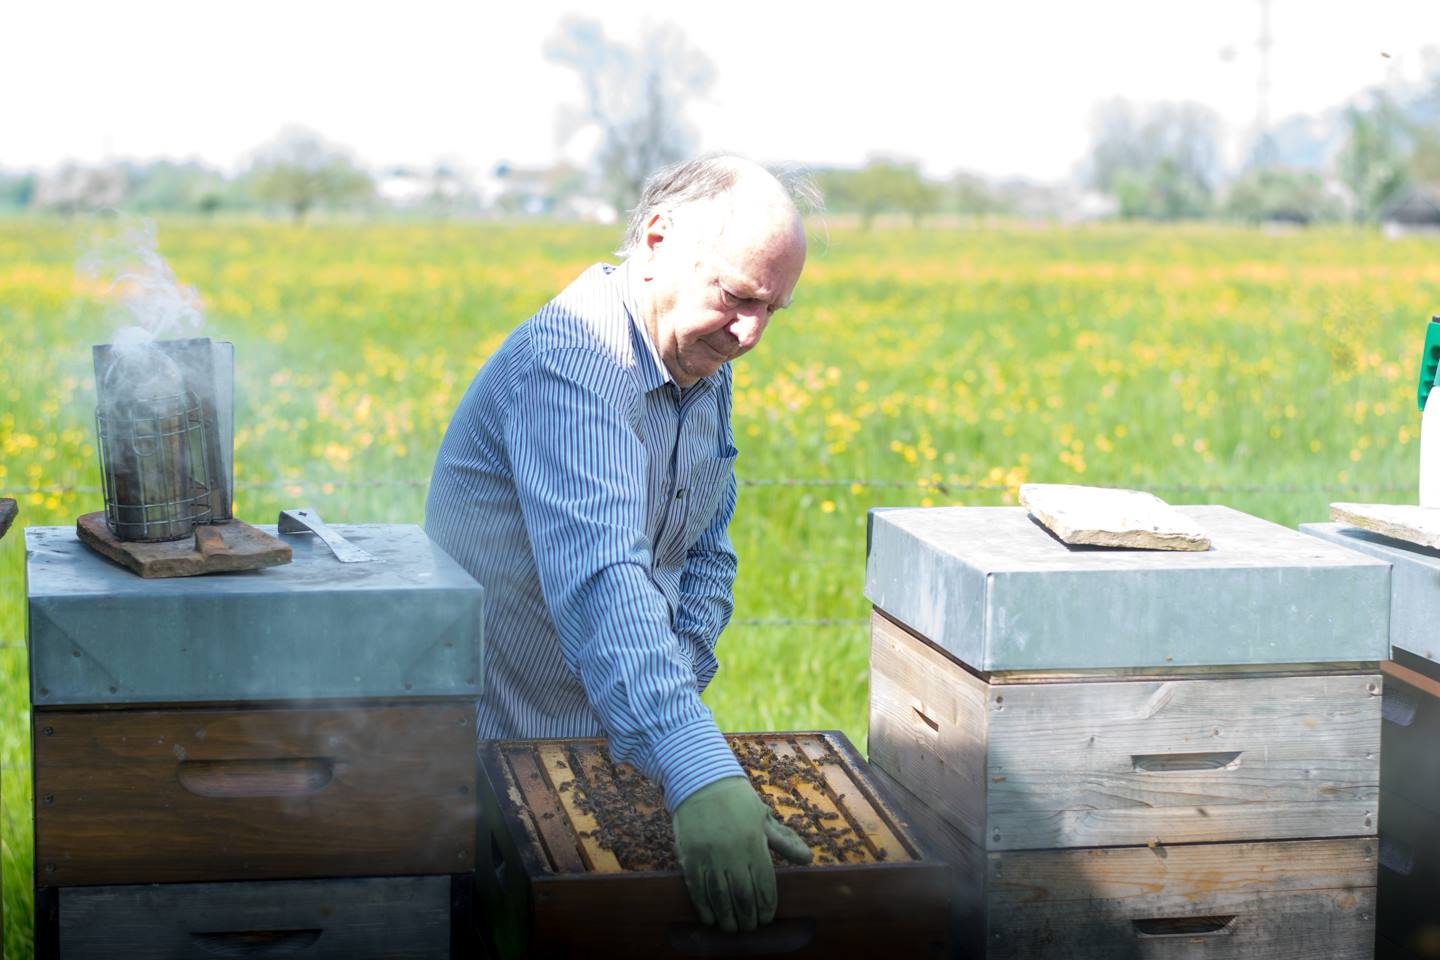 Egon Gmeiner Versucht Einen Bienenstock Anzuheben, Außerdem Zeigt Das Bild Noch Mehrere Andere Bienenstöcke